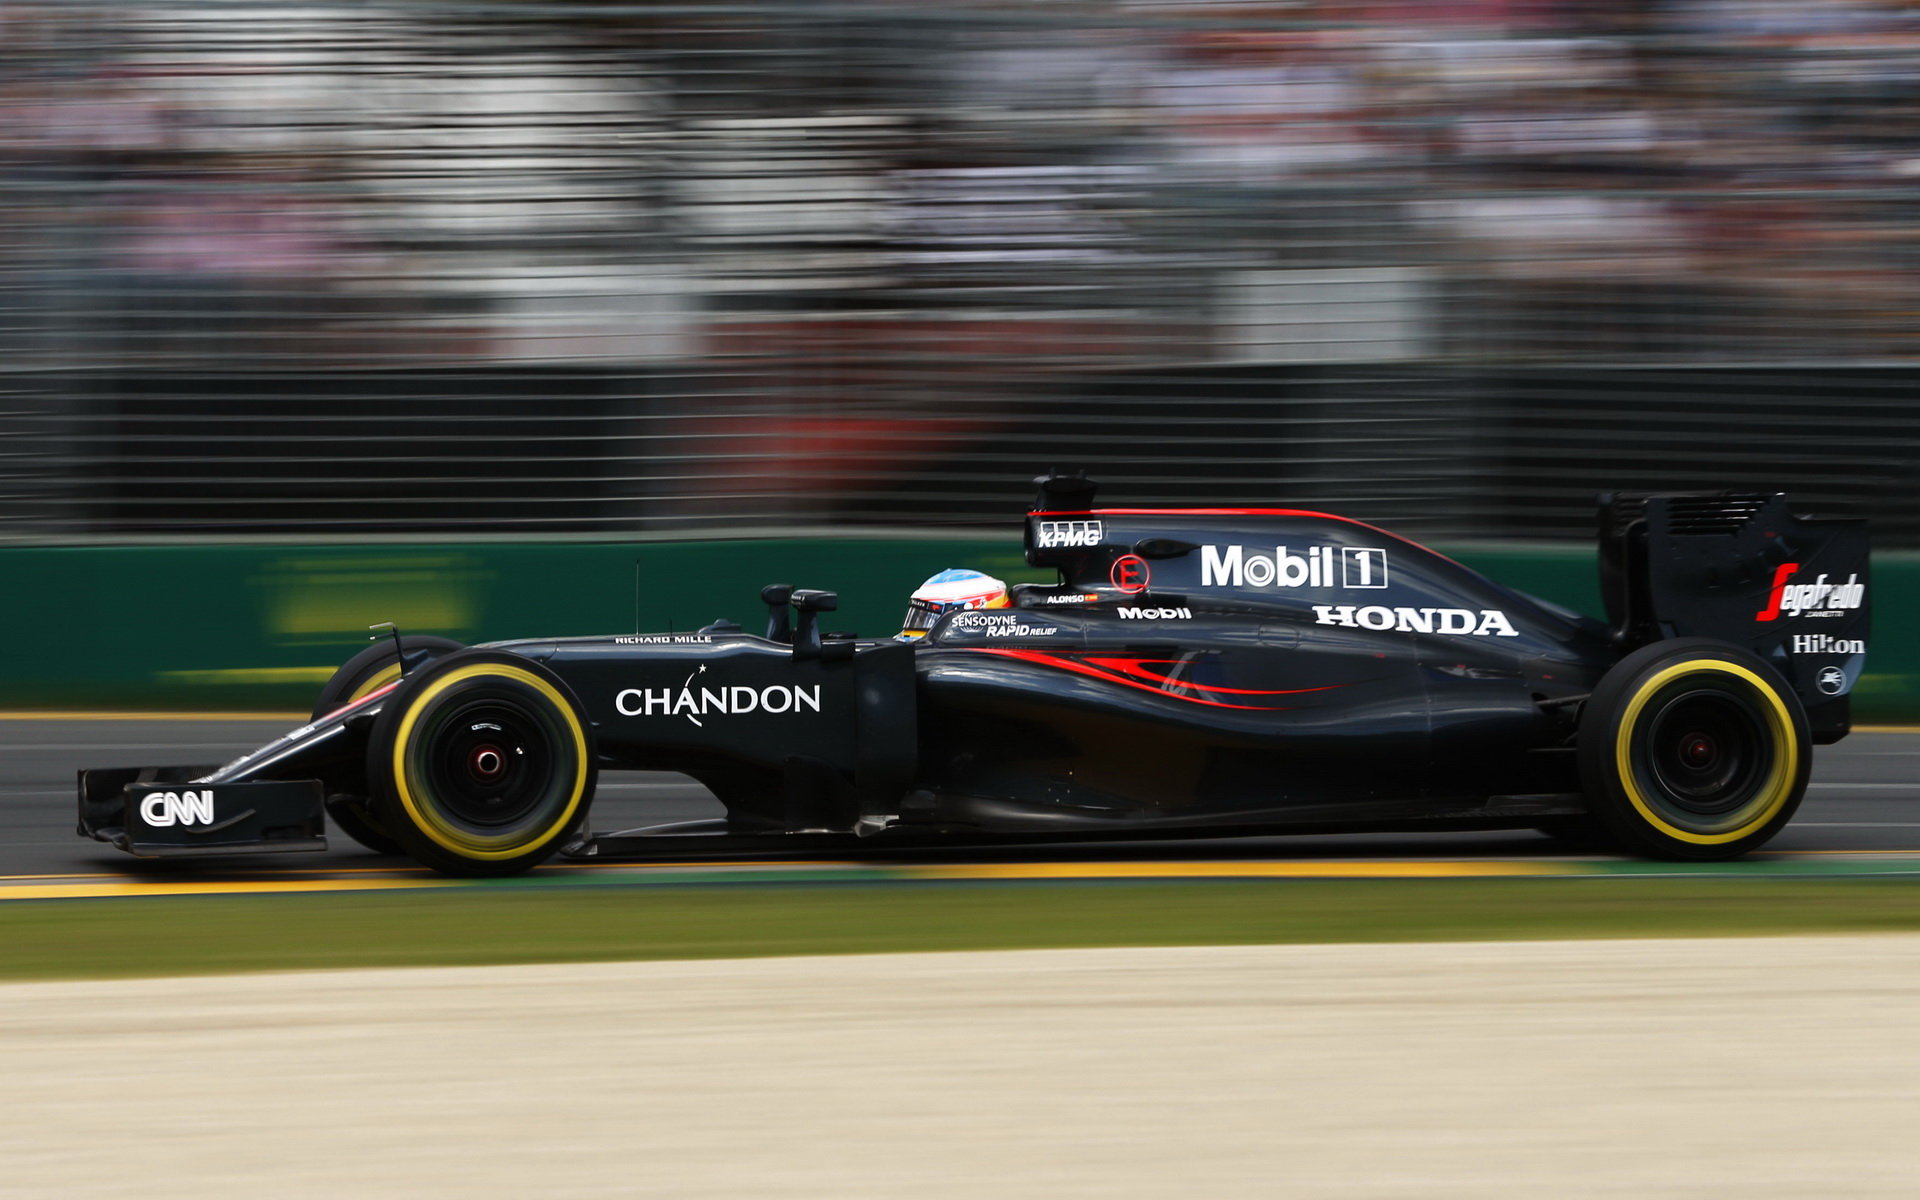 Fernanod Alonso nastoupí do závodu v Bahrajnu s novým motorem